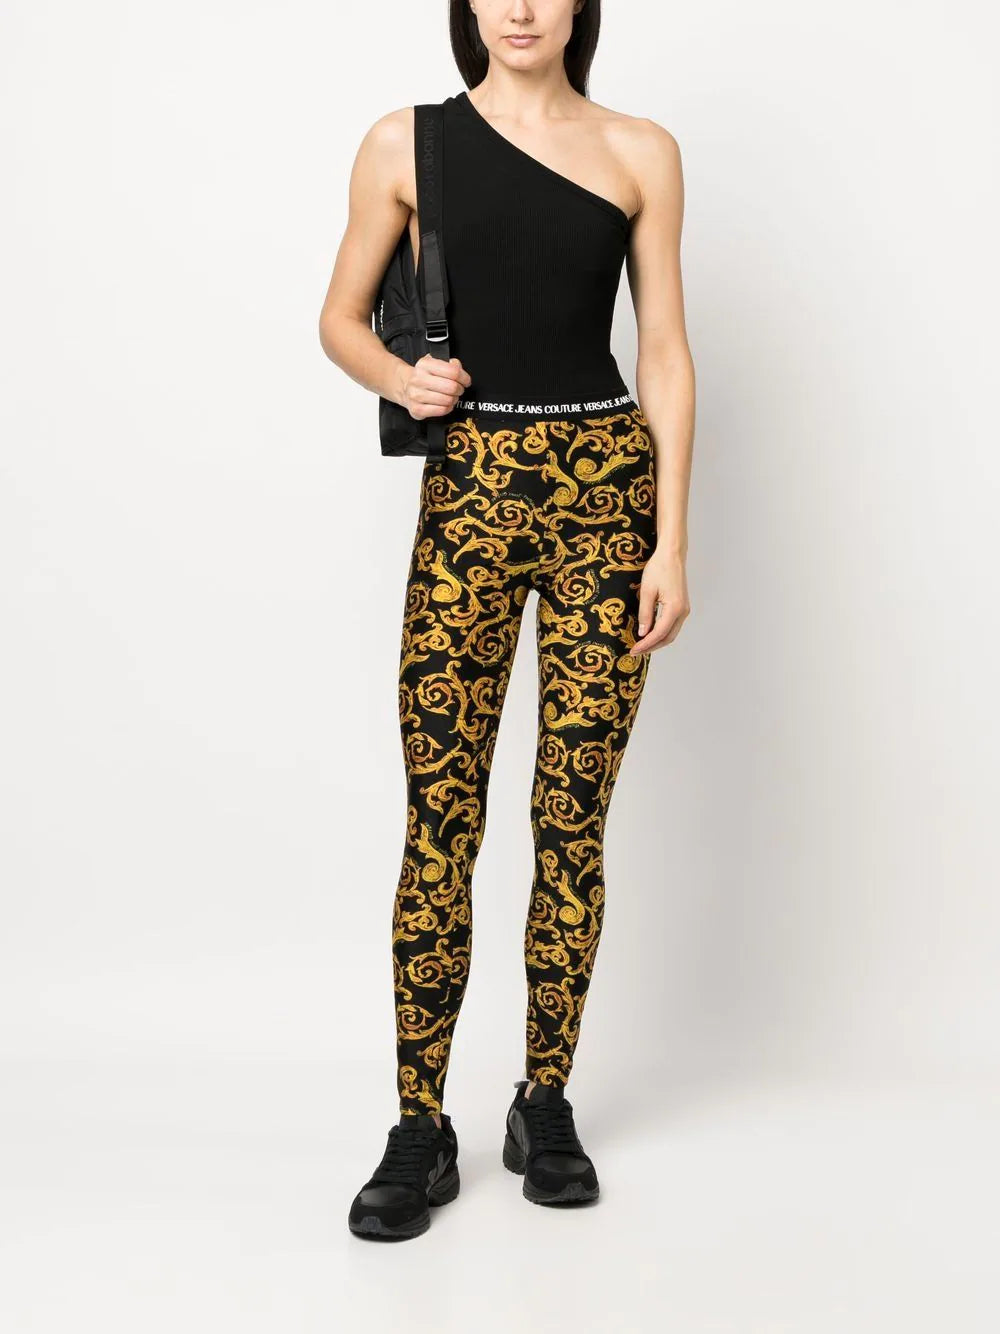 VERSACE WOMEN Sketch Couture Print Leggings Black/Gold - MAISONDEFASHION.COM